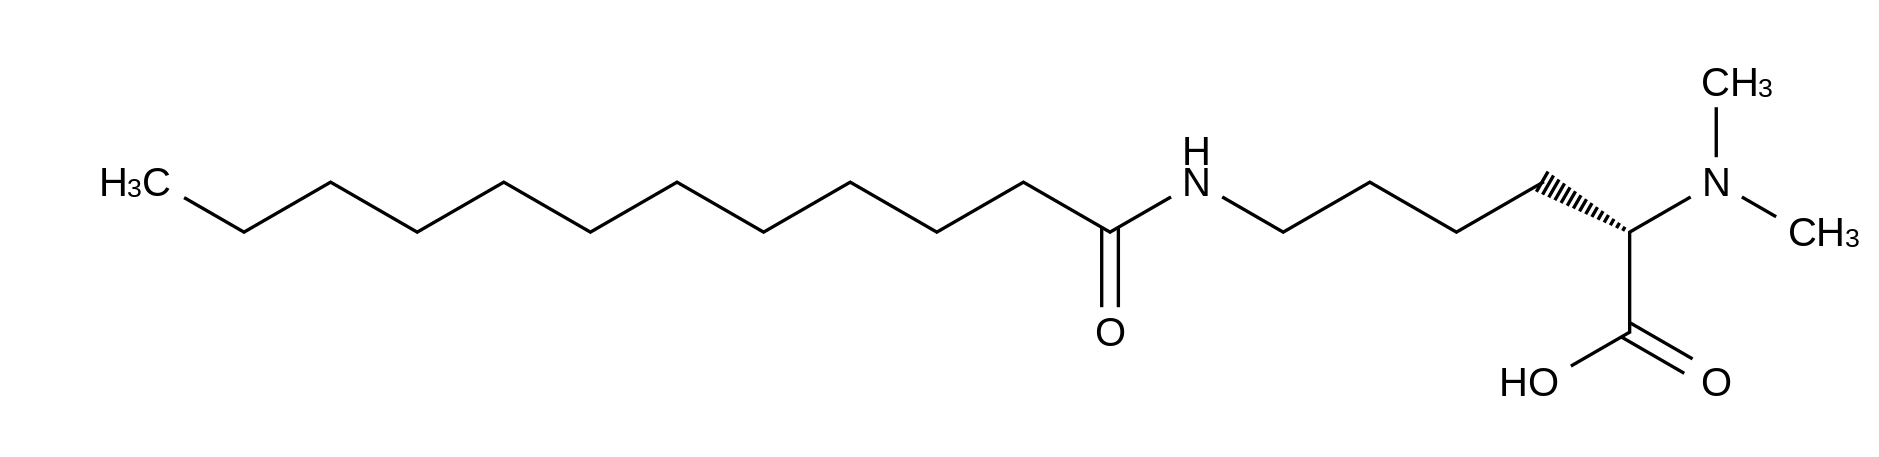 N2,N2-Dimethyl-N6-(1-oxododecyl)-L-Lysine